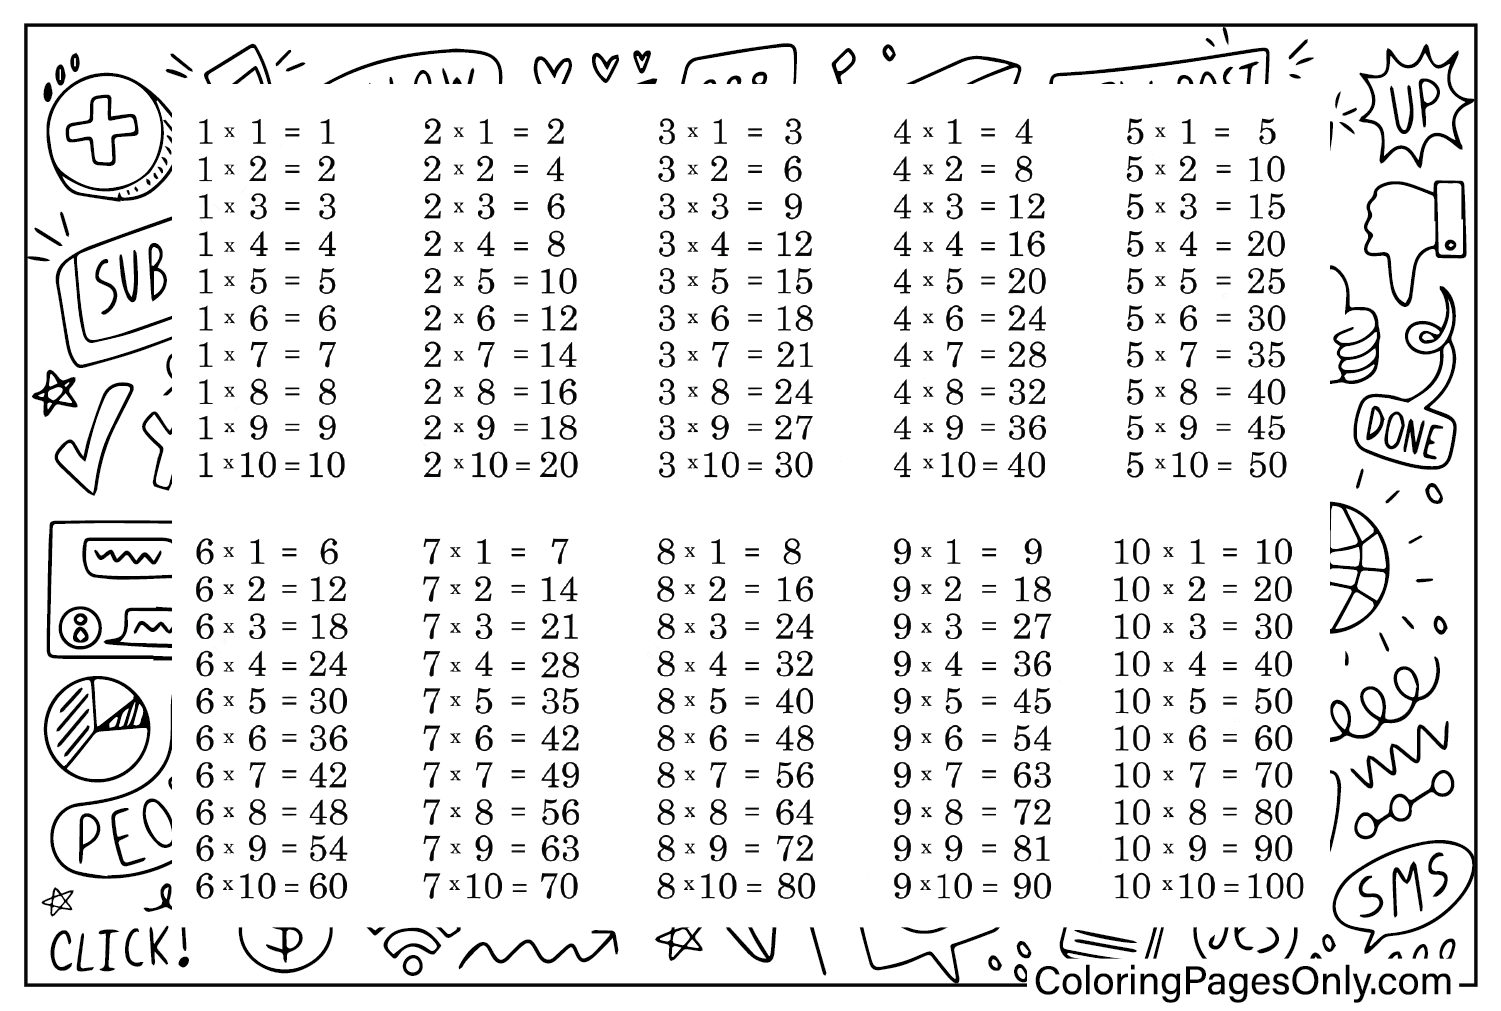 Цветная распечатка таблицы умножения из таблицы умножения